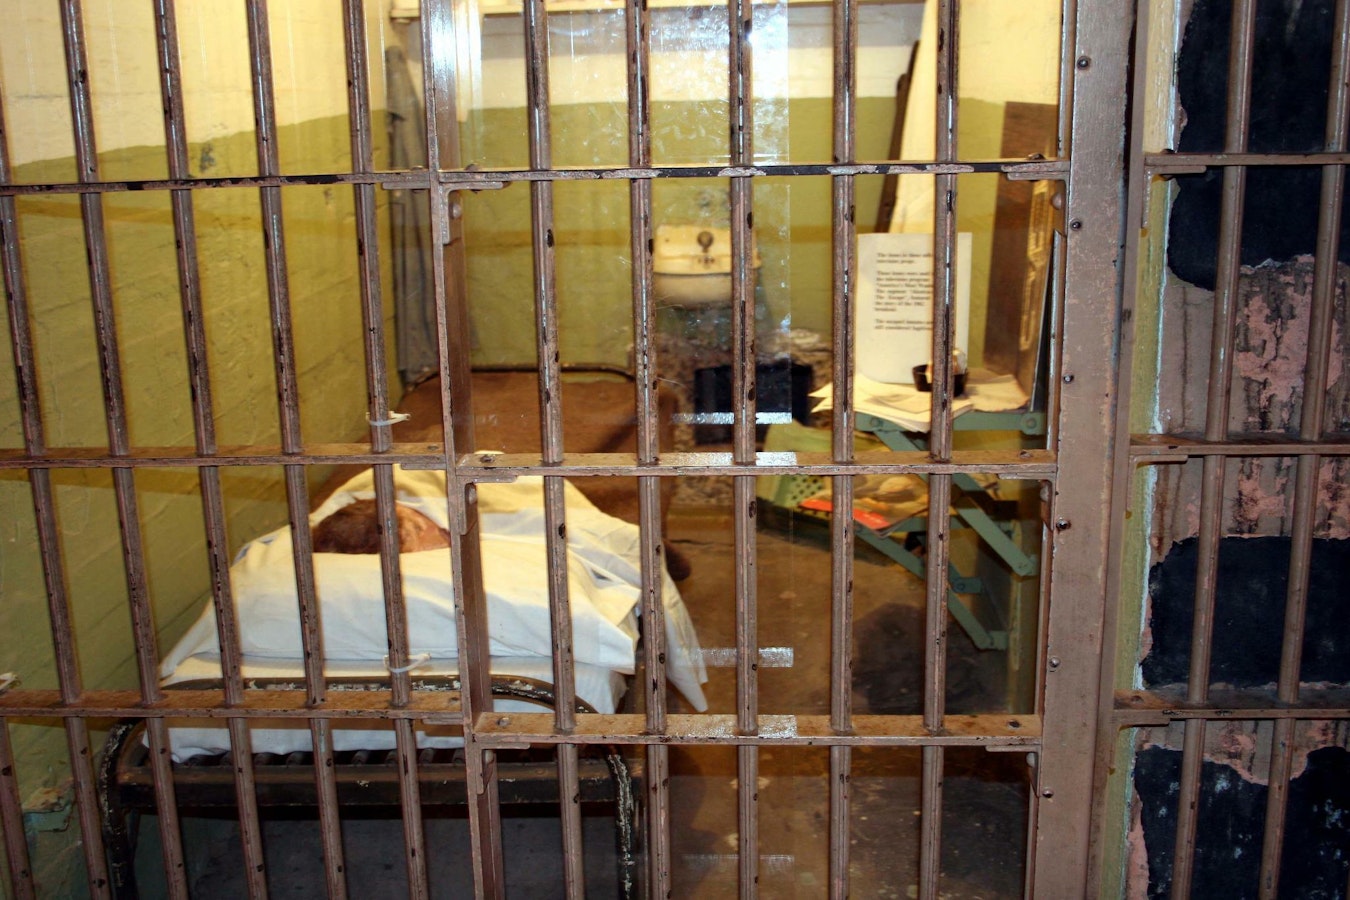 worst alcatraz prison inmates